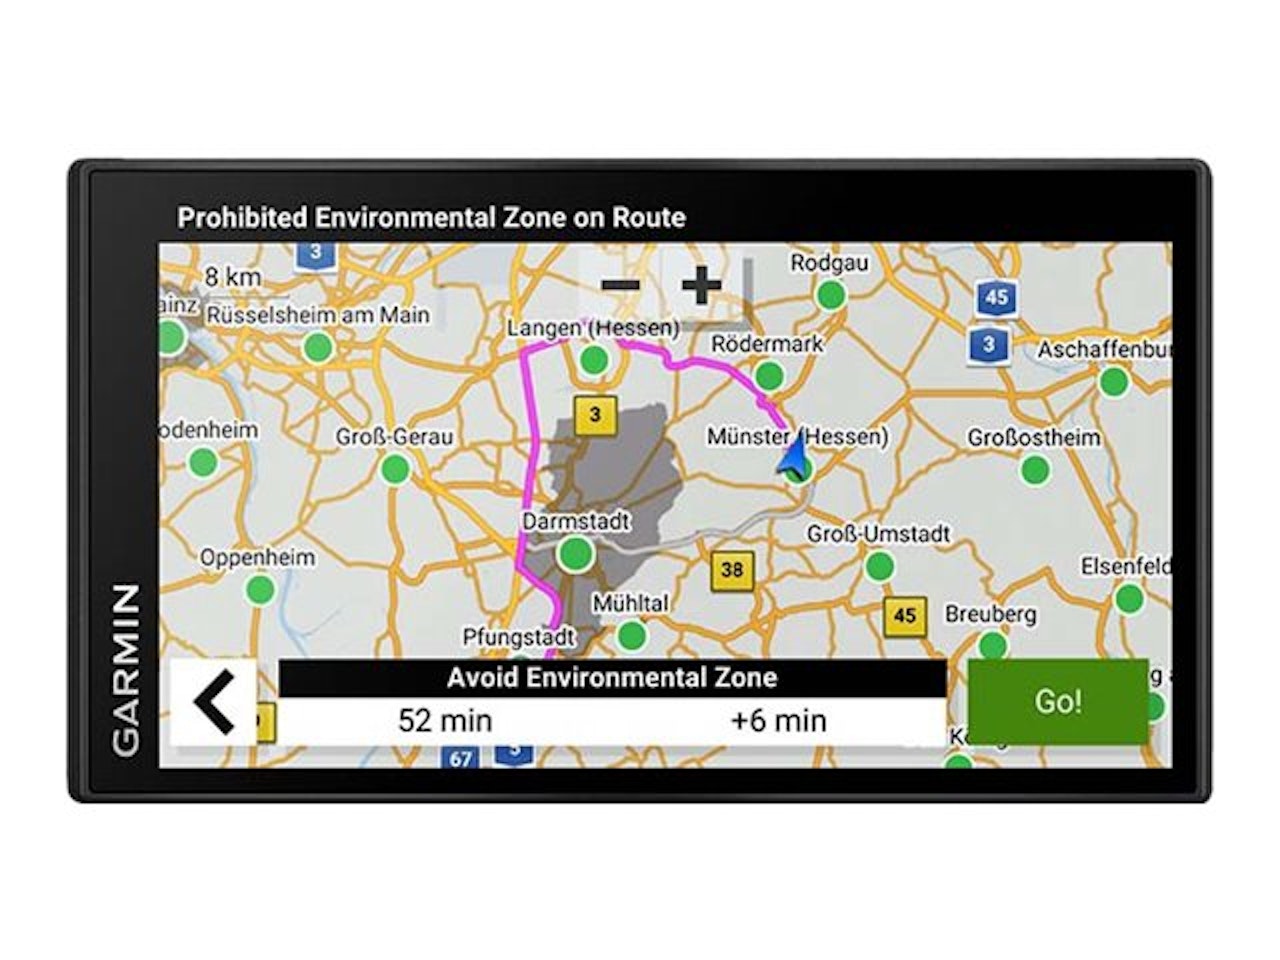 Garmin DriveSmart 86 GPS navigator 8 Europa